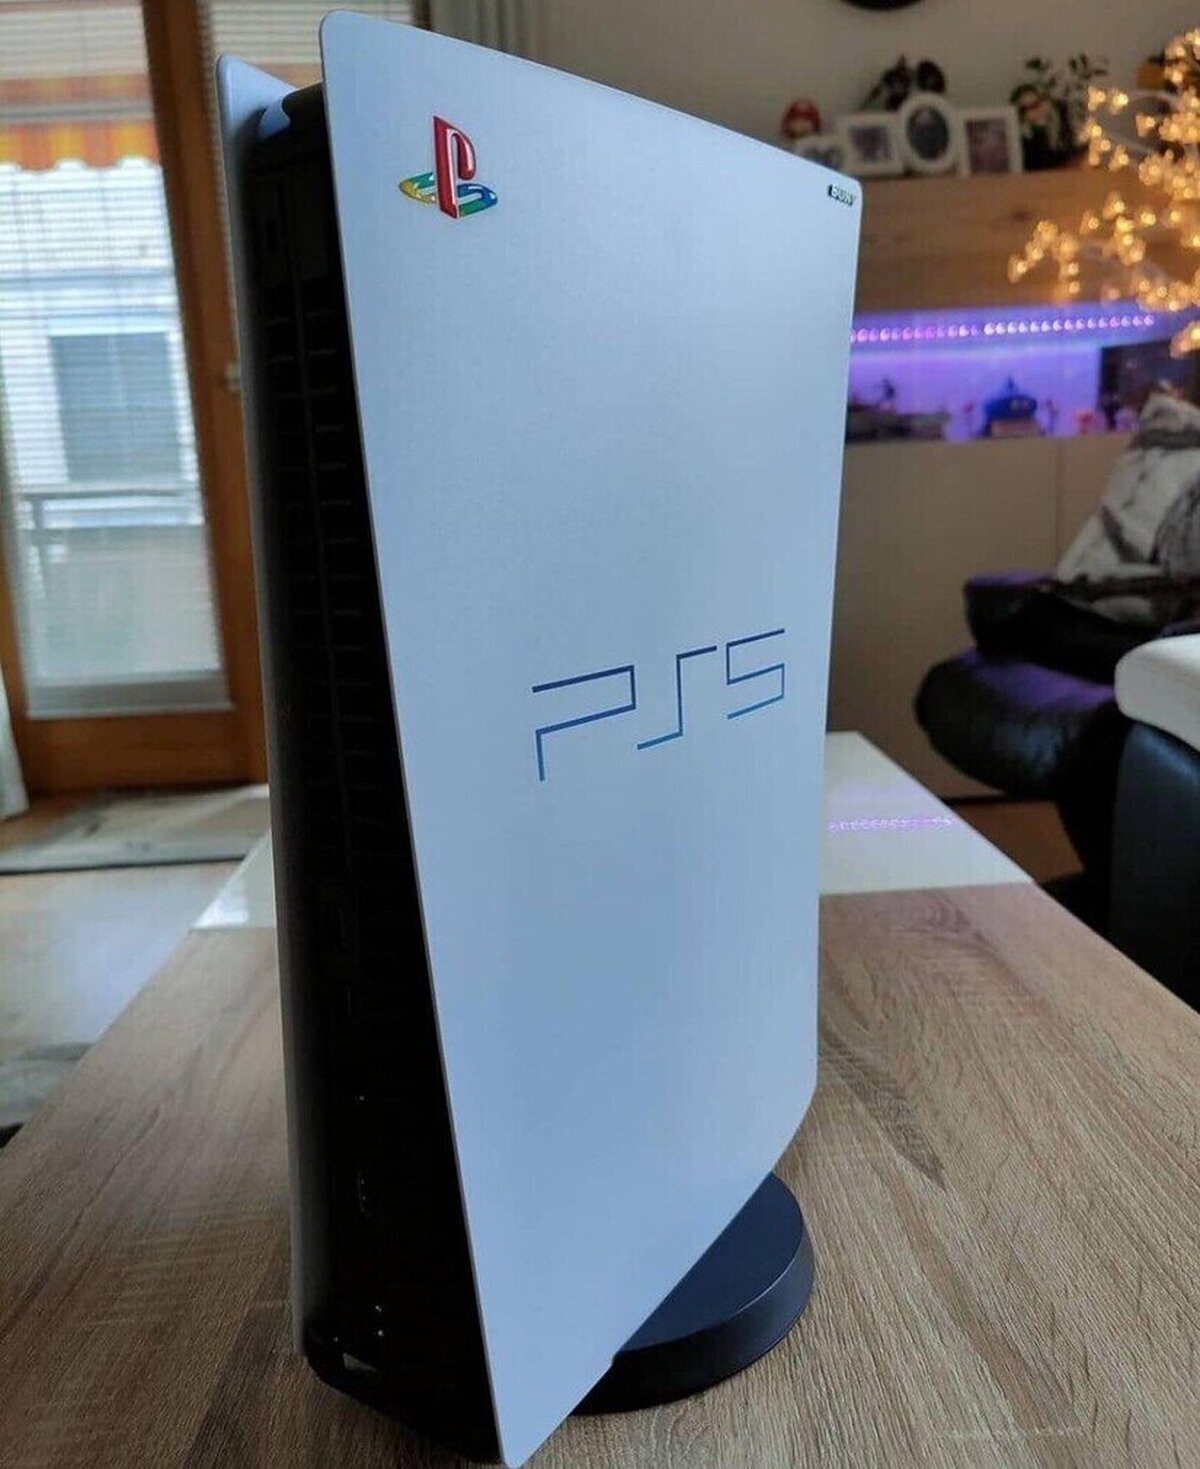 Una versión customizada de PS5 para los más nostálgicos